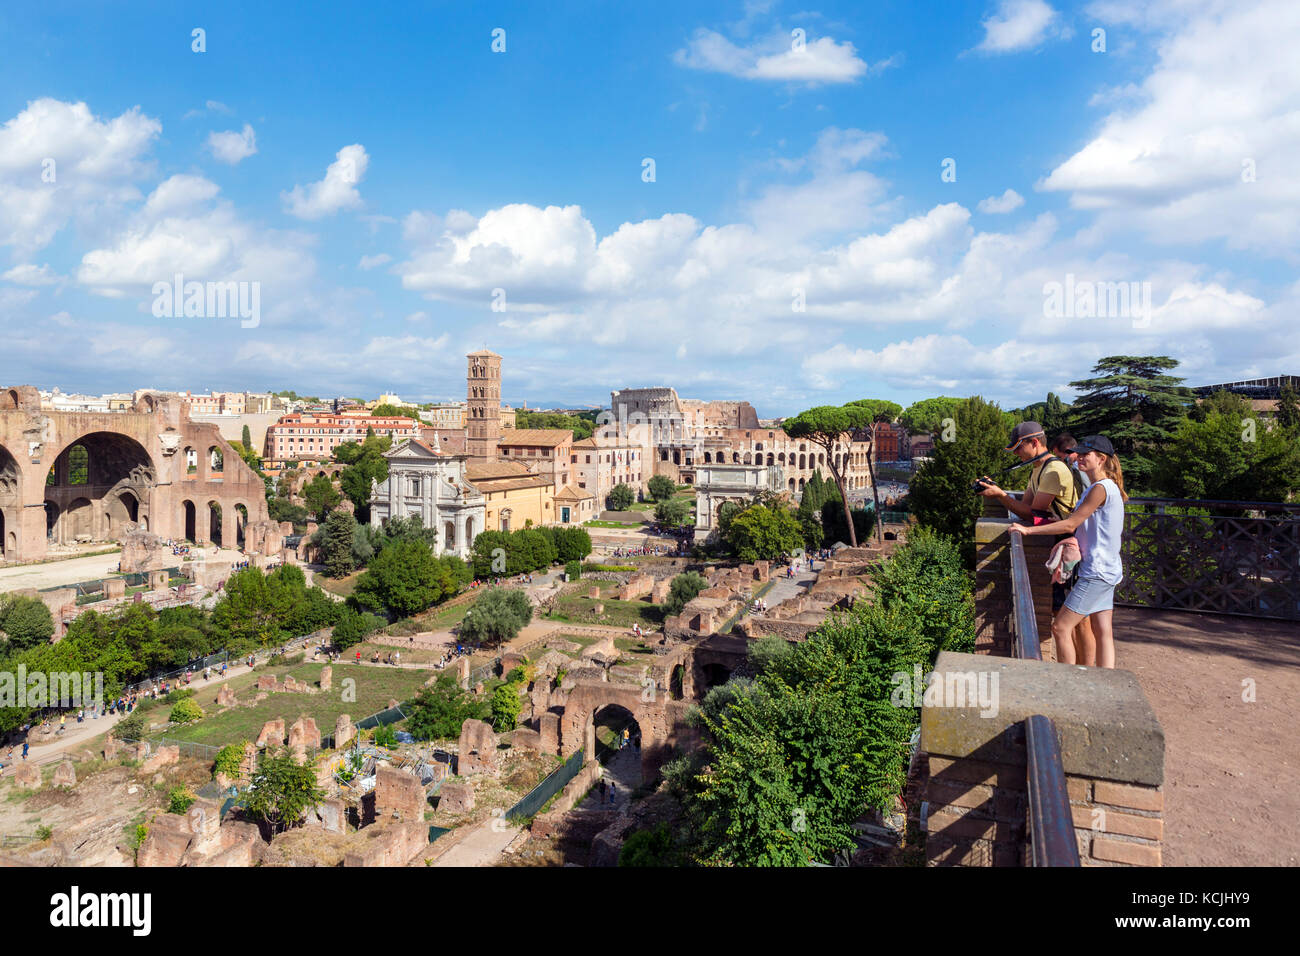 Forum de Rome. Vue depuis la colline du Palatin sur les anciennes ruines du Forum Romain, Rome, Italie Banque D'Images